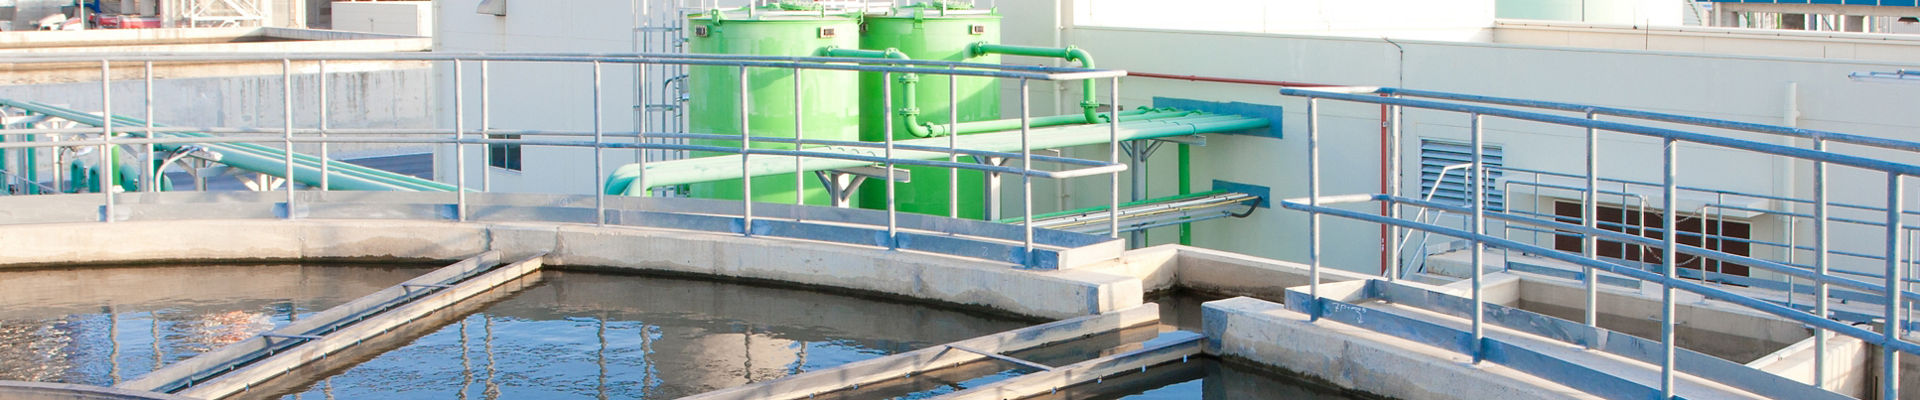 Tanques de tratamiento en sistemas de tratamiento de aguas residuales